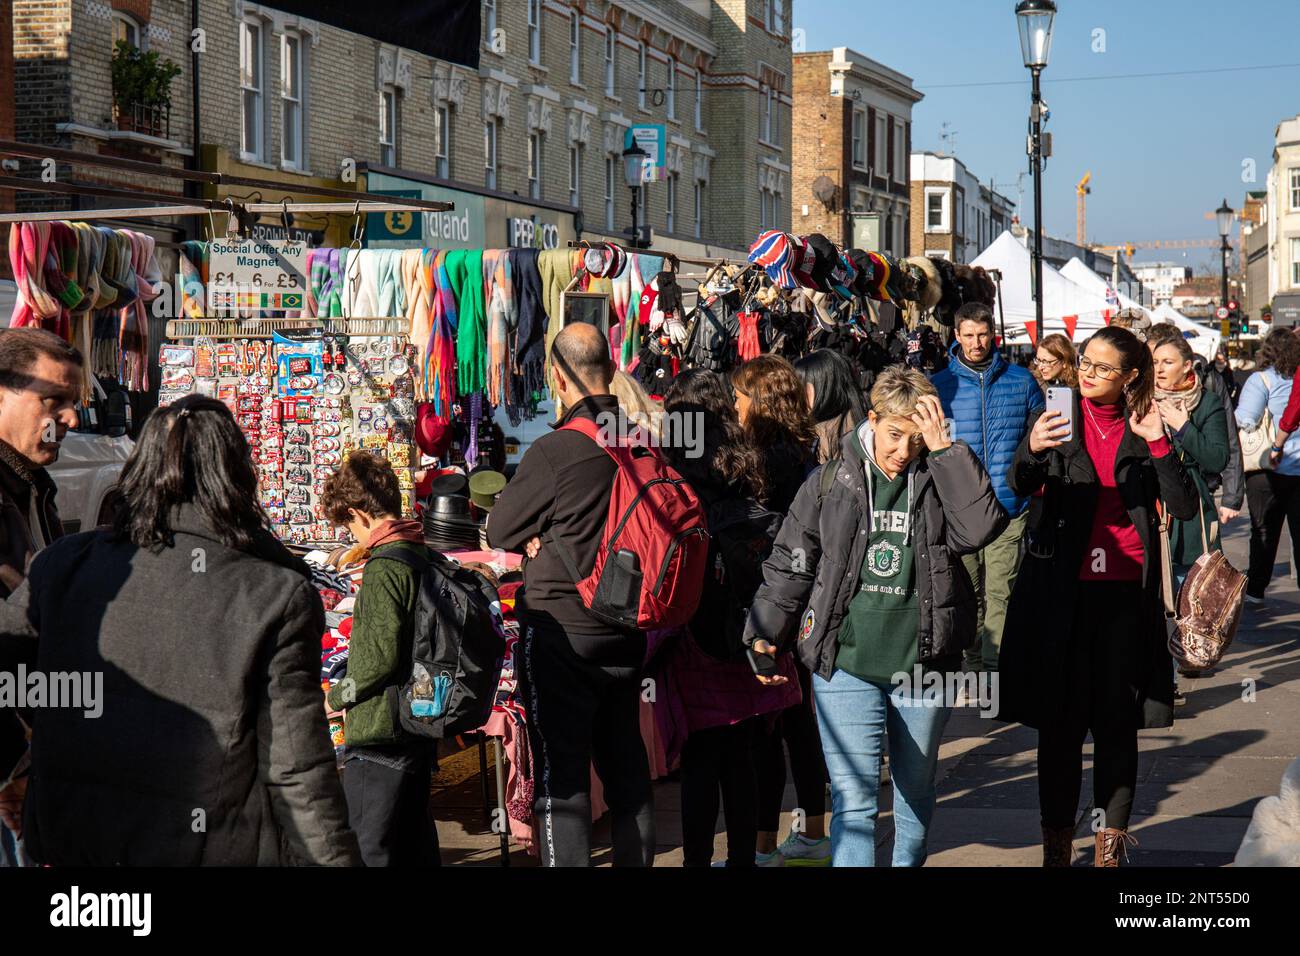 Portobello Road affollata con venditori ambulanti, bancarelle e turisti nel quartiere di Notting Hill di Londra, Inghilterra Foto Stock